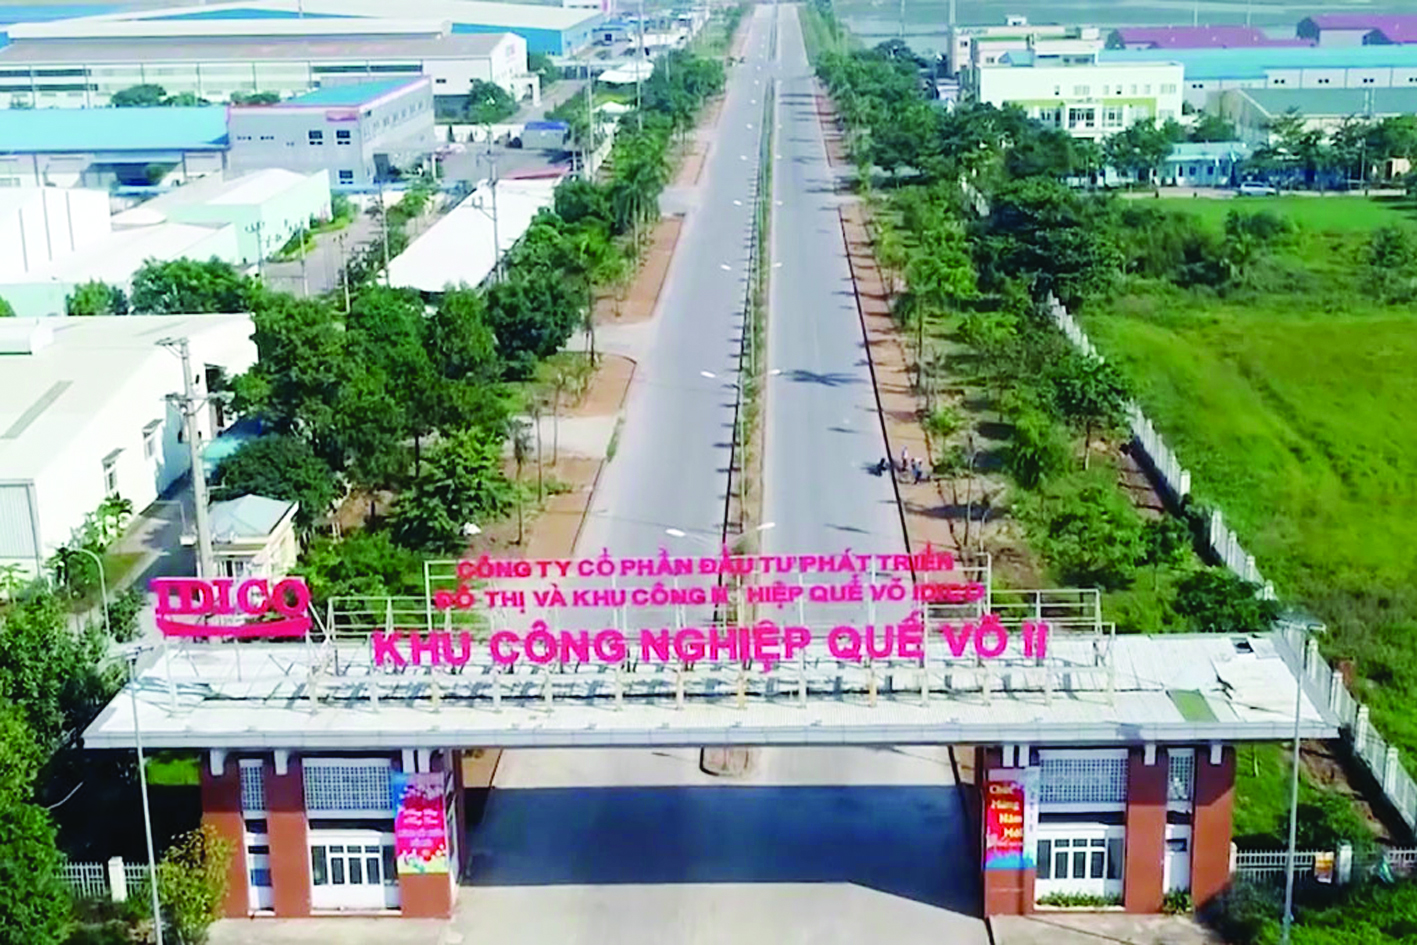  Khu công nghiệp Quế Võ, Bắc Ninh